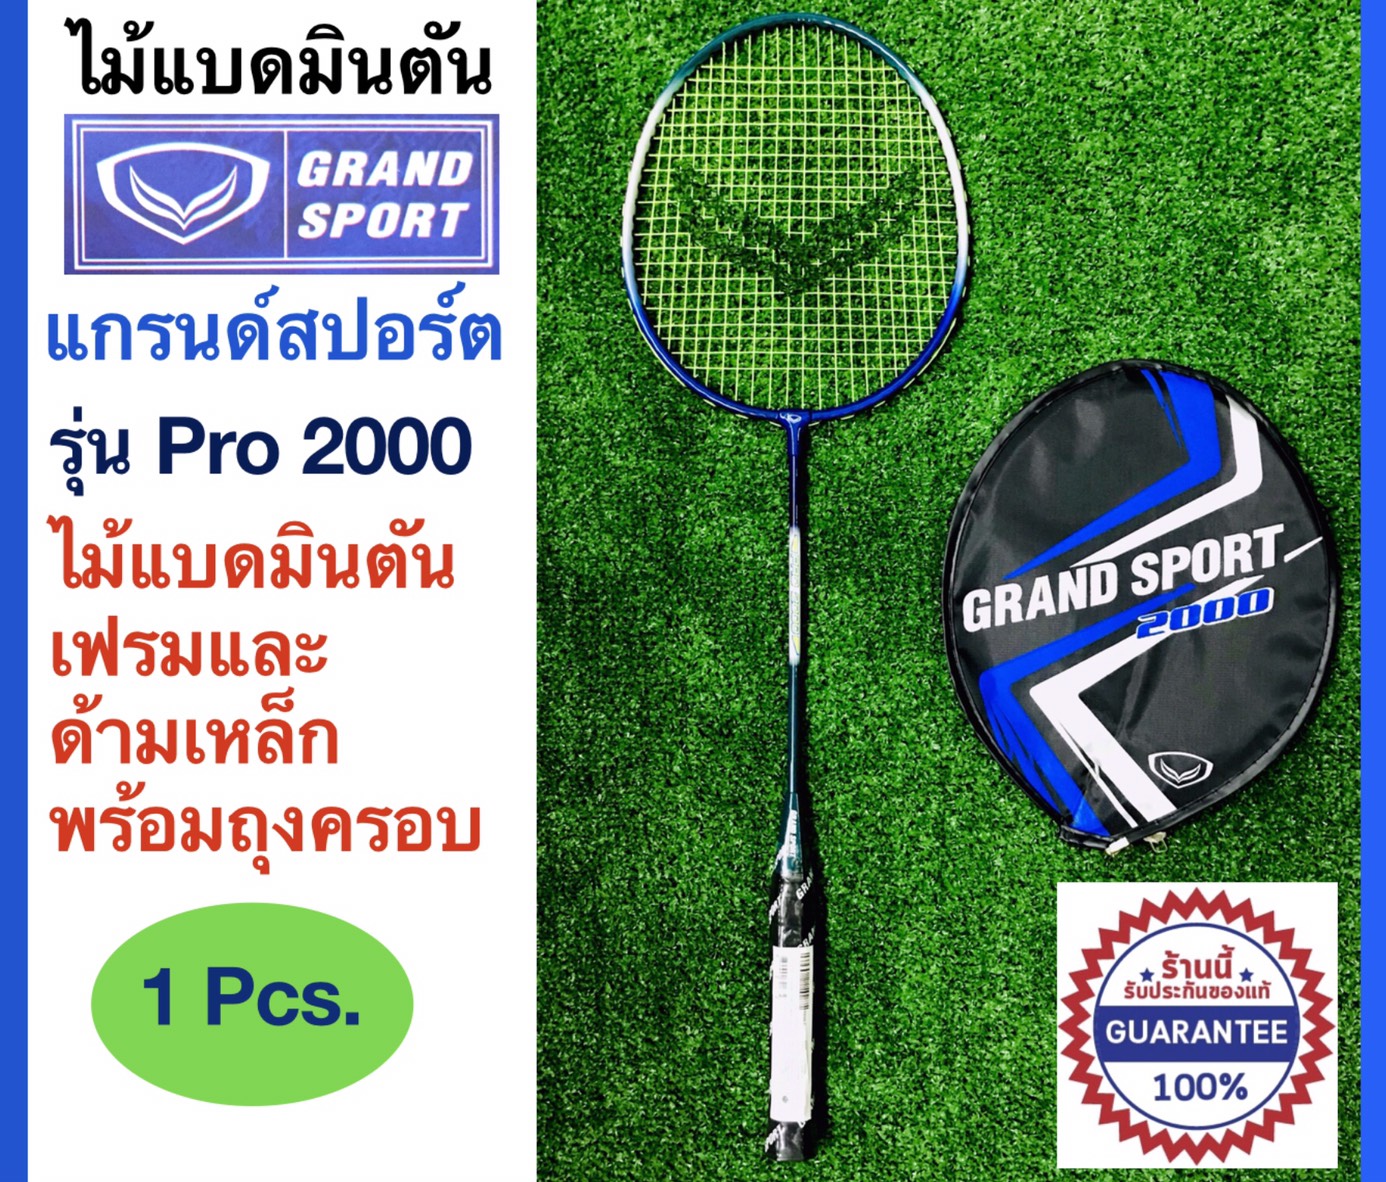 ภาพอธิบายเพิ่มเติมของ Grand Sport ไม้แบดมินตัน แกรนด์สปอร์ต Badminton racket รุ่น Pro 2000  พร้อมถุงครอบเพื่อรักษาเอ็นแบด